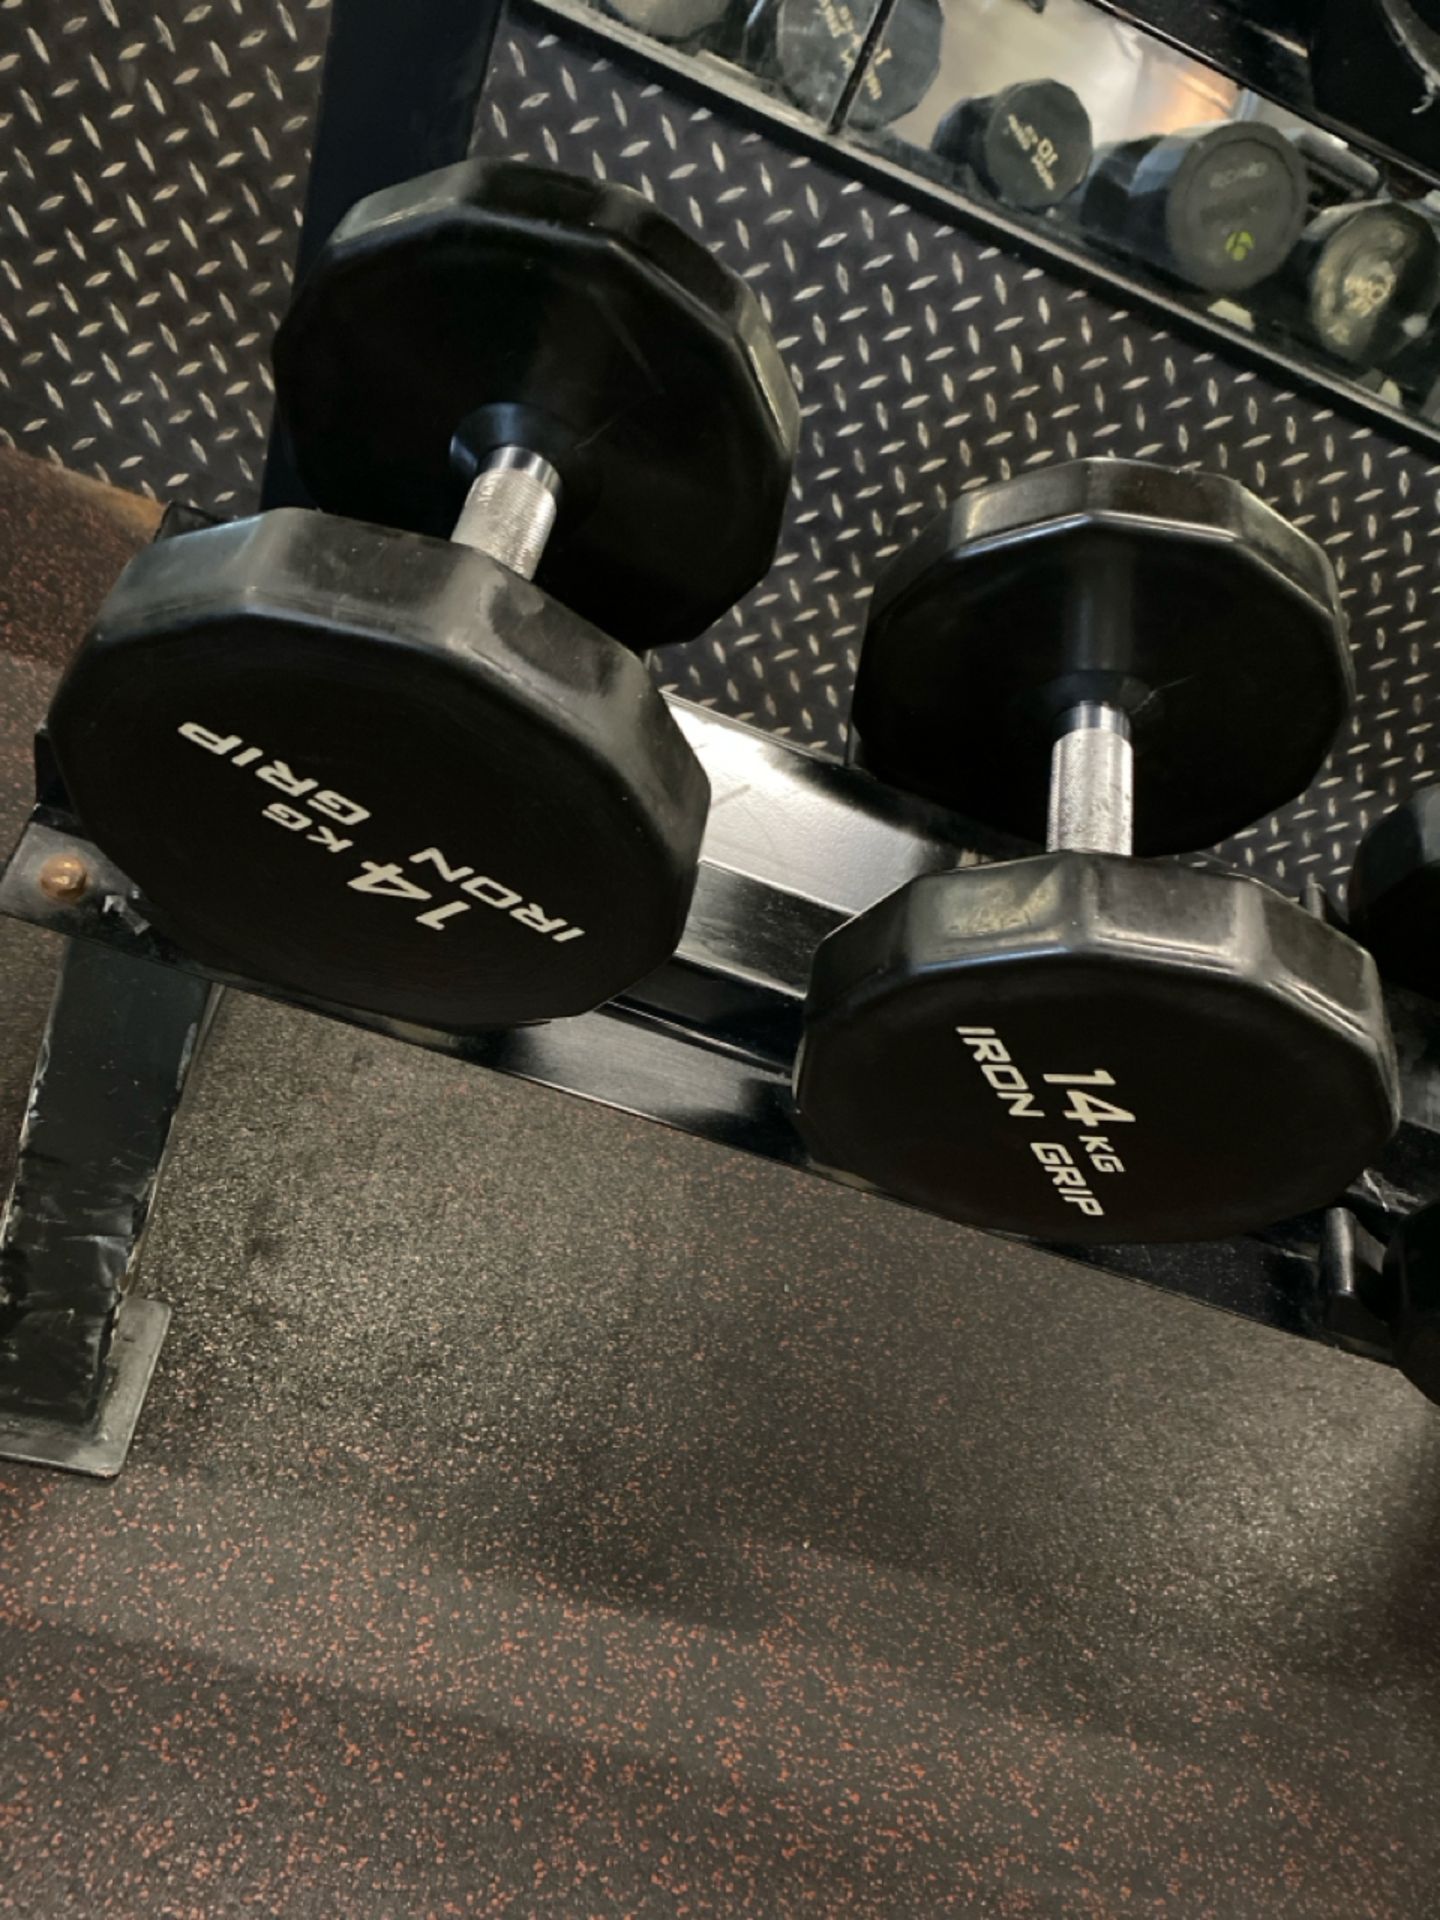 Iron Grip Dumbell Set 14kg, 16kg, 18kg - Image 2 of 5